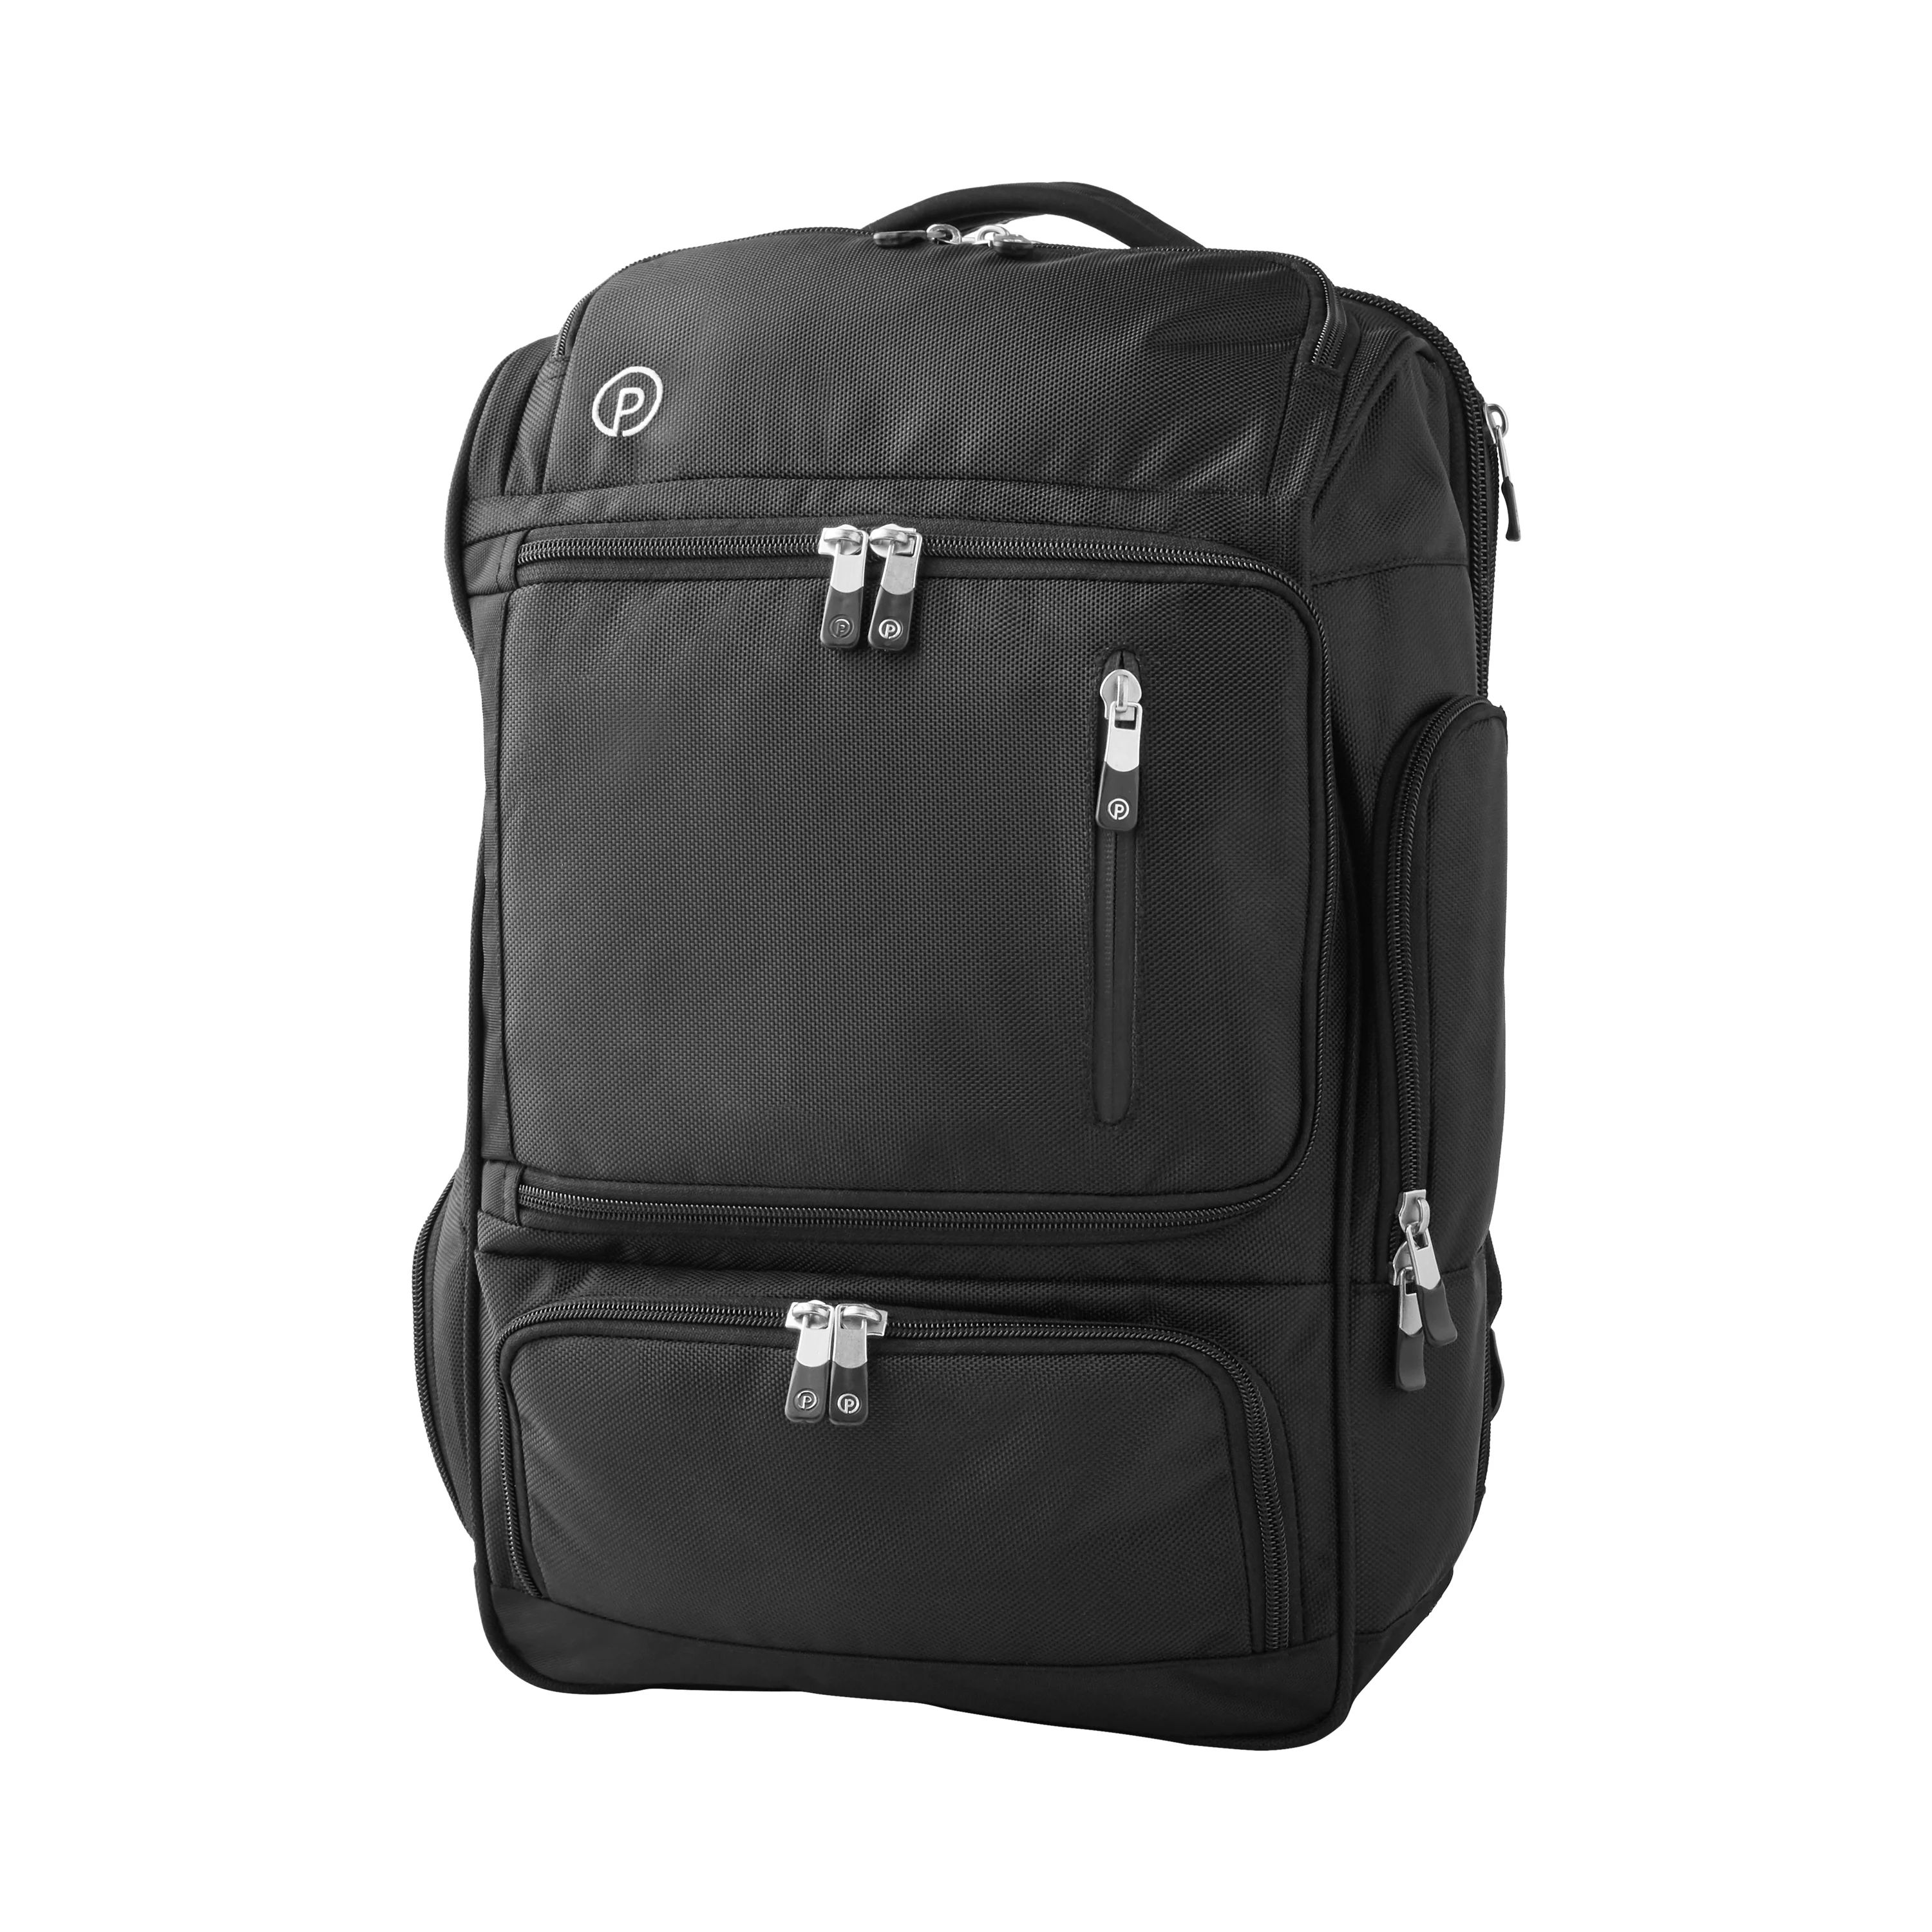 Protege 3-in-1 Black Weekender Backpack | Walmart (US)